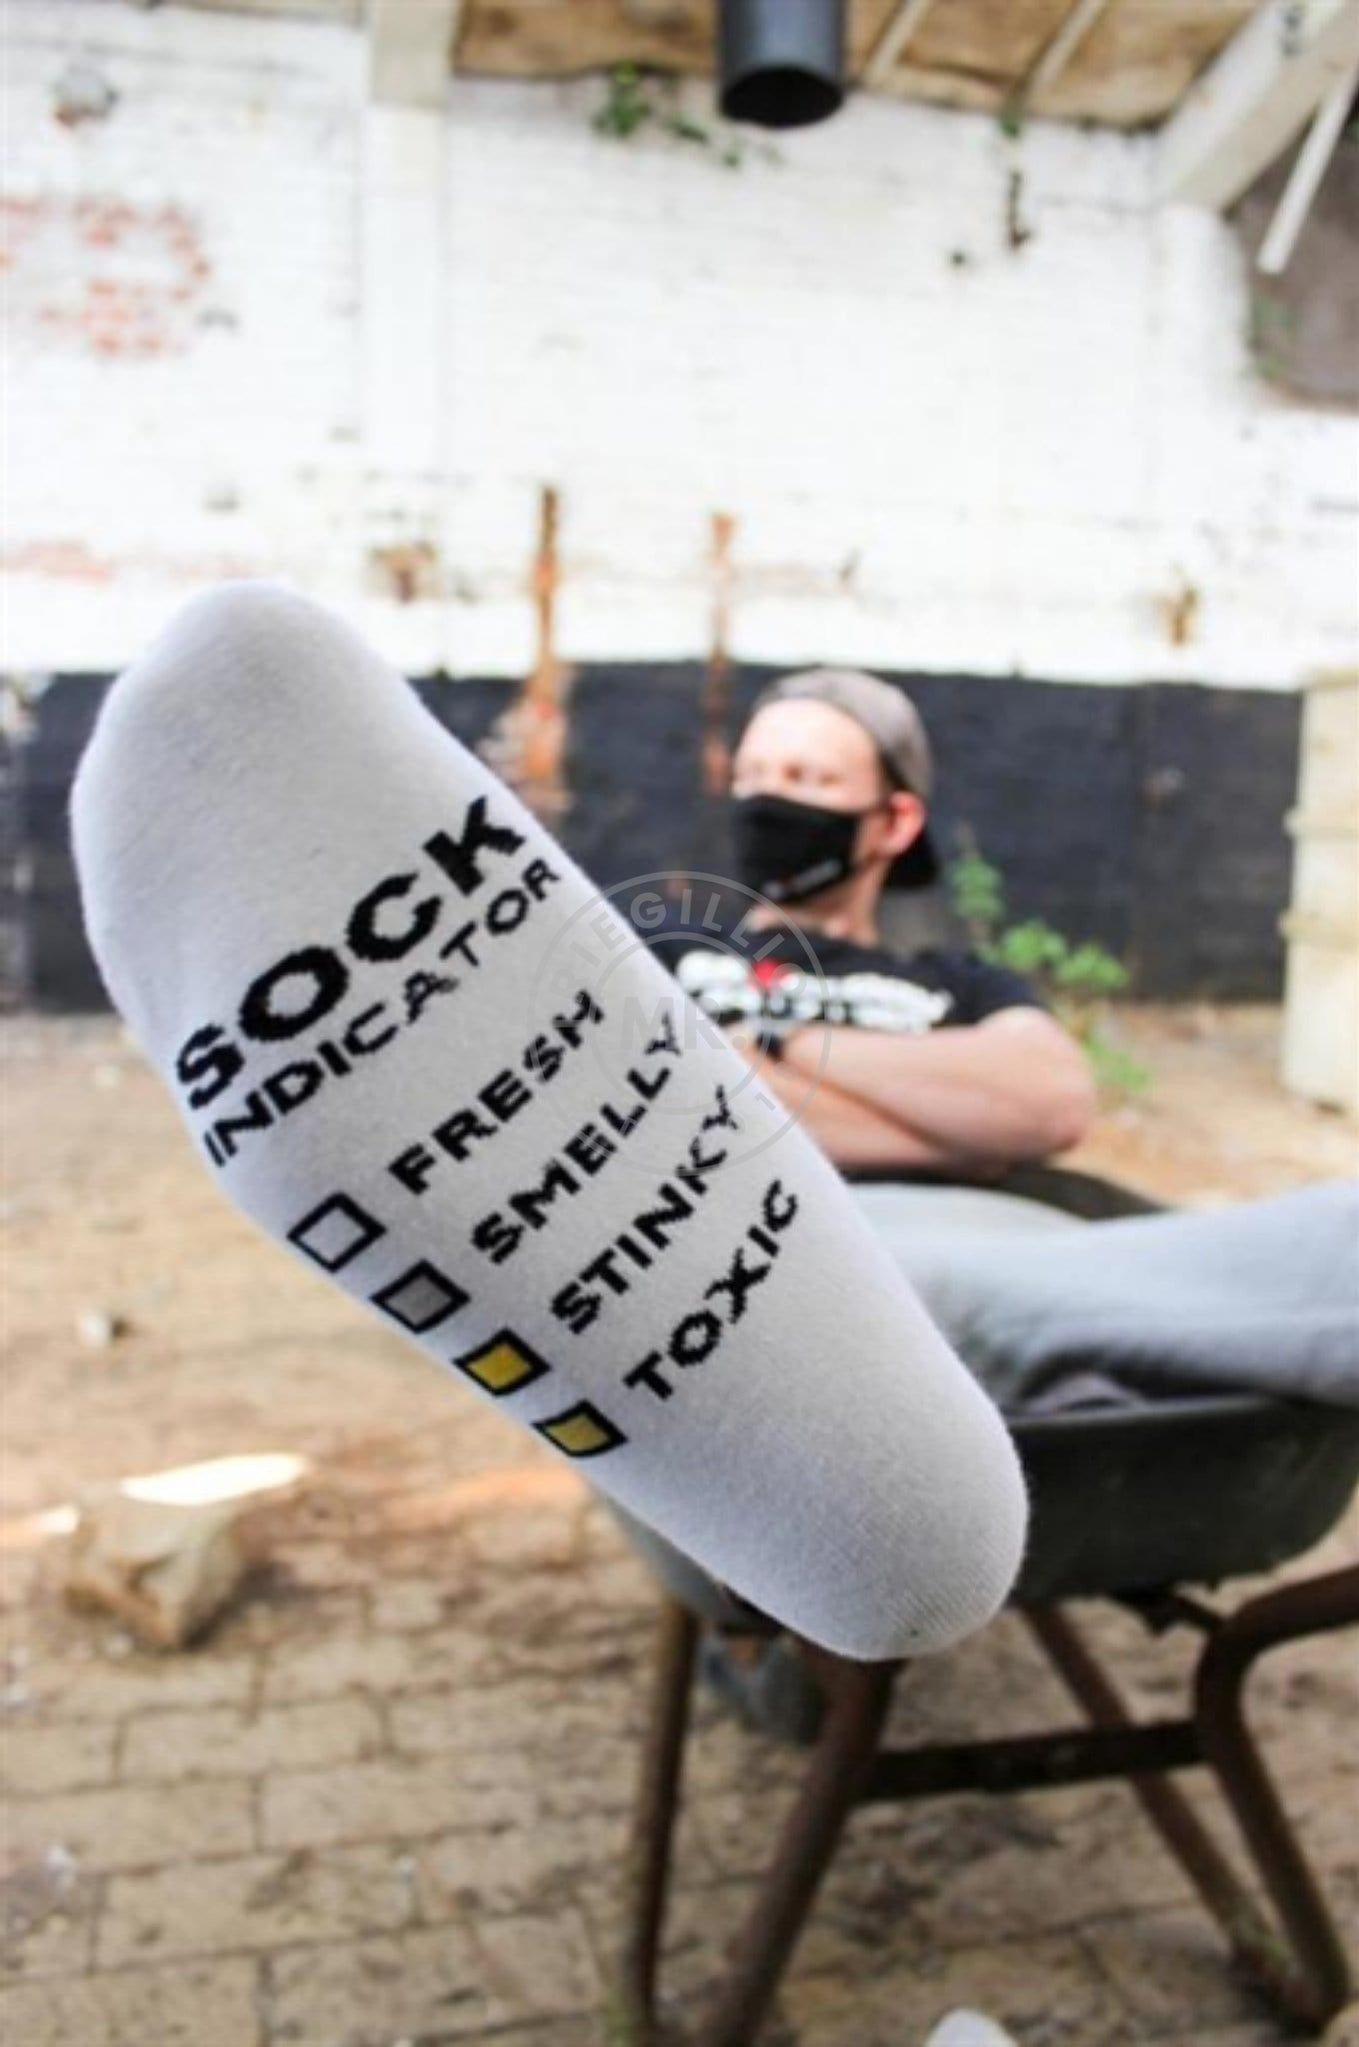 Sk8erboy Smelly Socks at MR. Riegillio